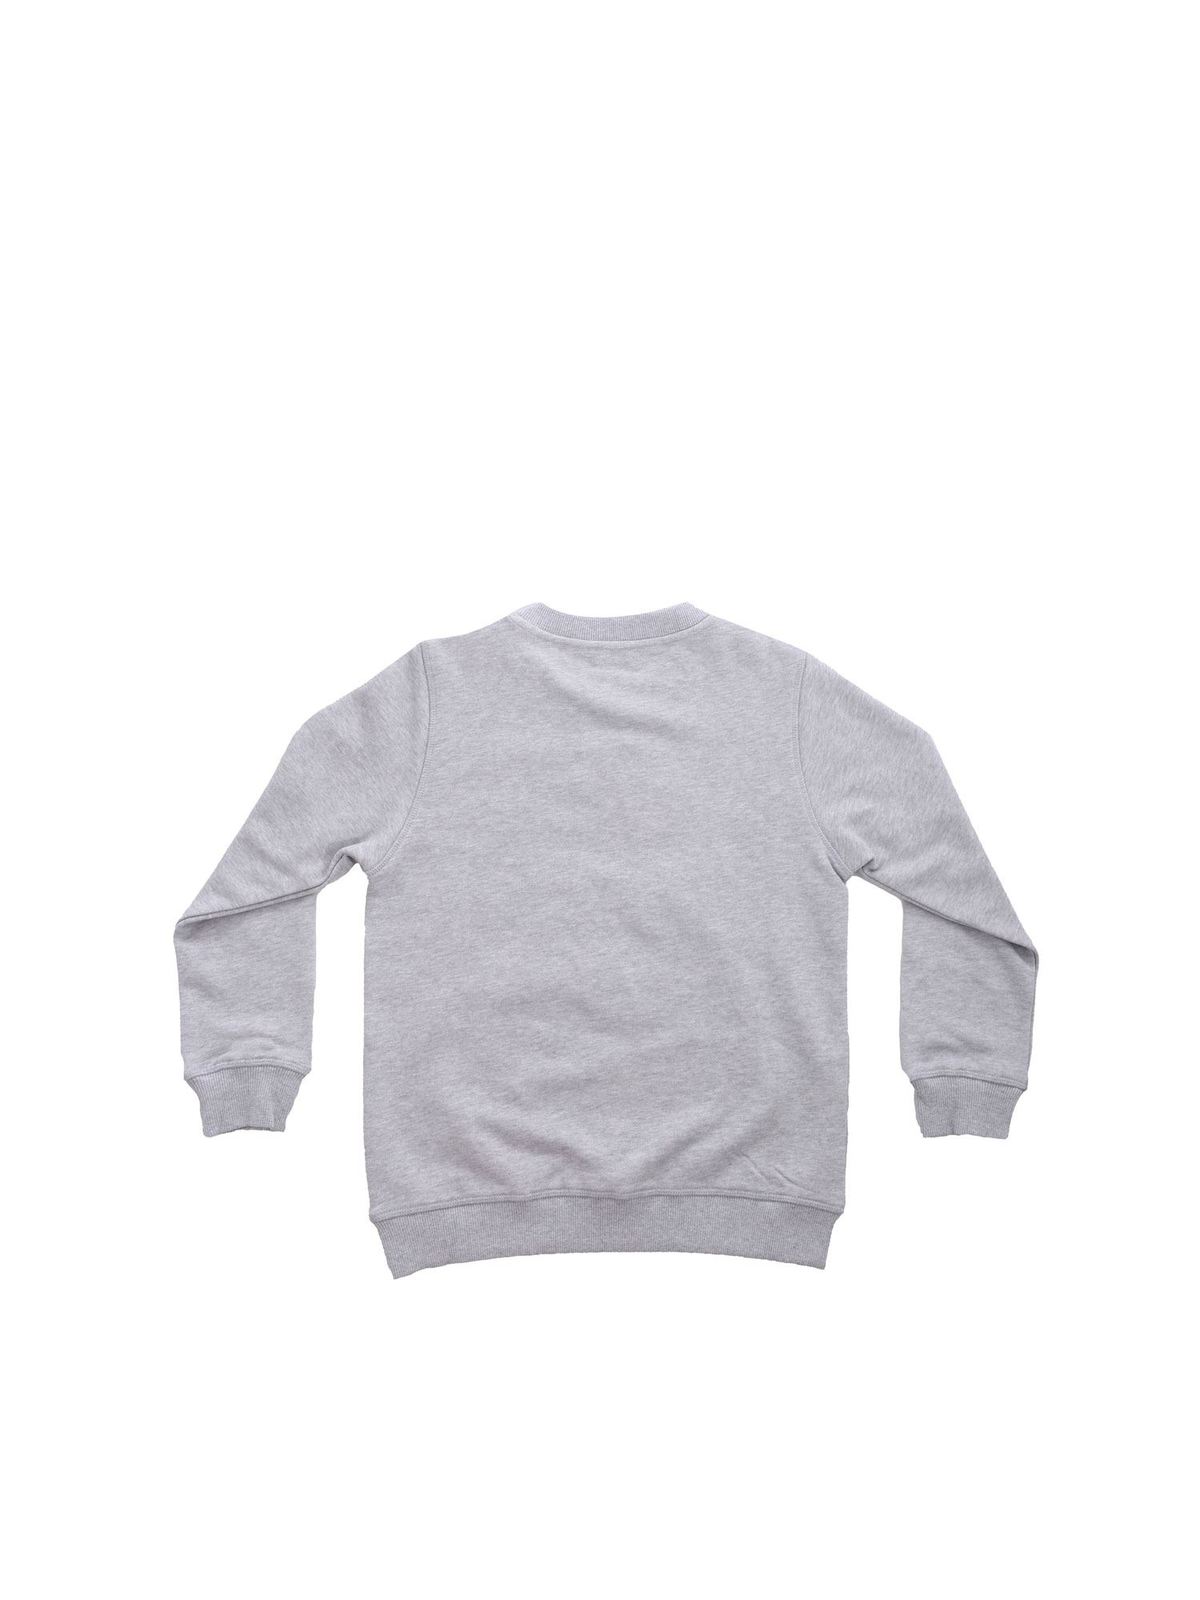 gray kenzo shirt